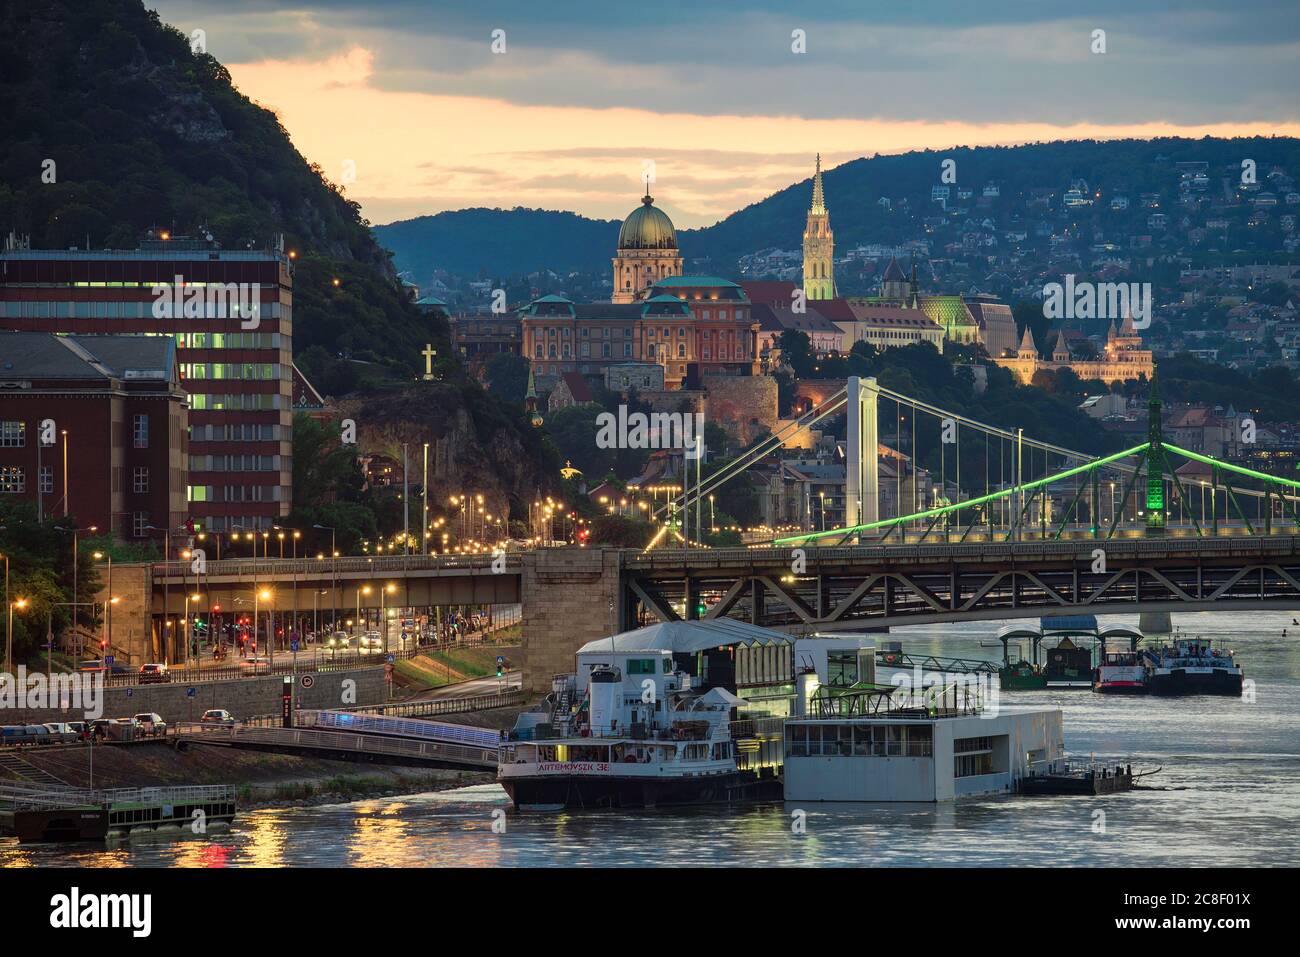 Budapester Stadtbild. Sie können die Freiheitsbrücke Erzsebet Brücke Buda königliche Burg Fishermens Bastion donau Fluss und berühmte Konzert Boot in der fo zu sehen Stockfoto